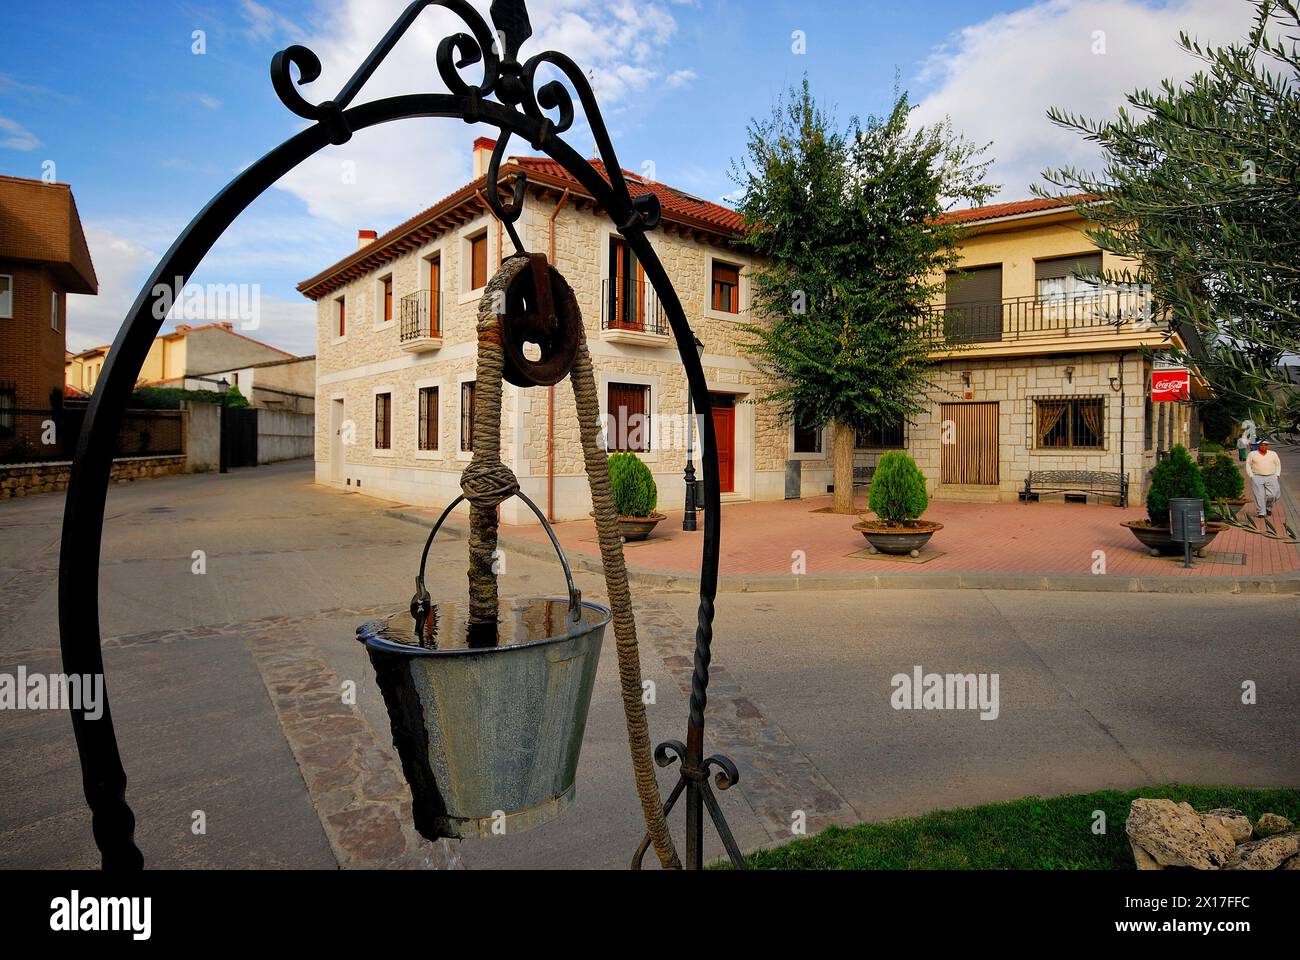 Rustic town of Torremocha del Jarama, Madrid, Spain Stock Photo